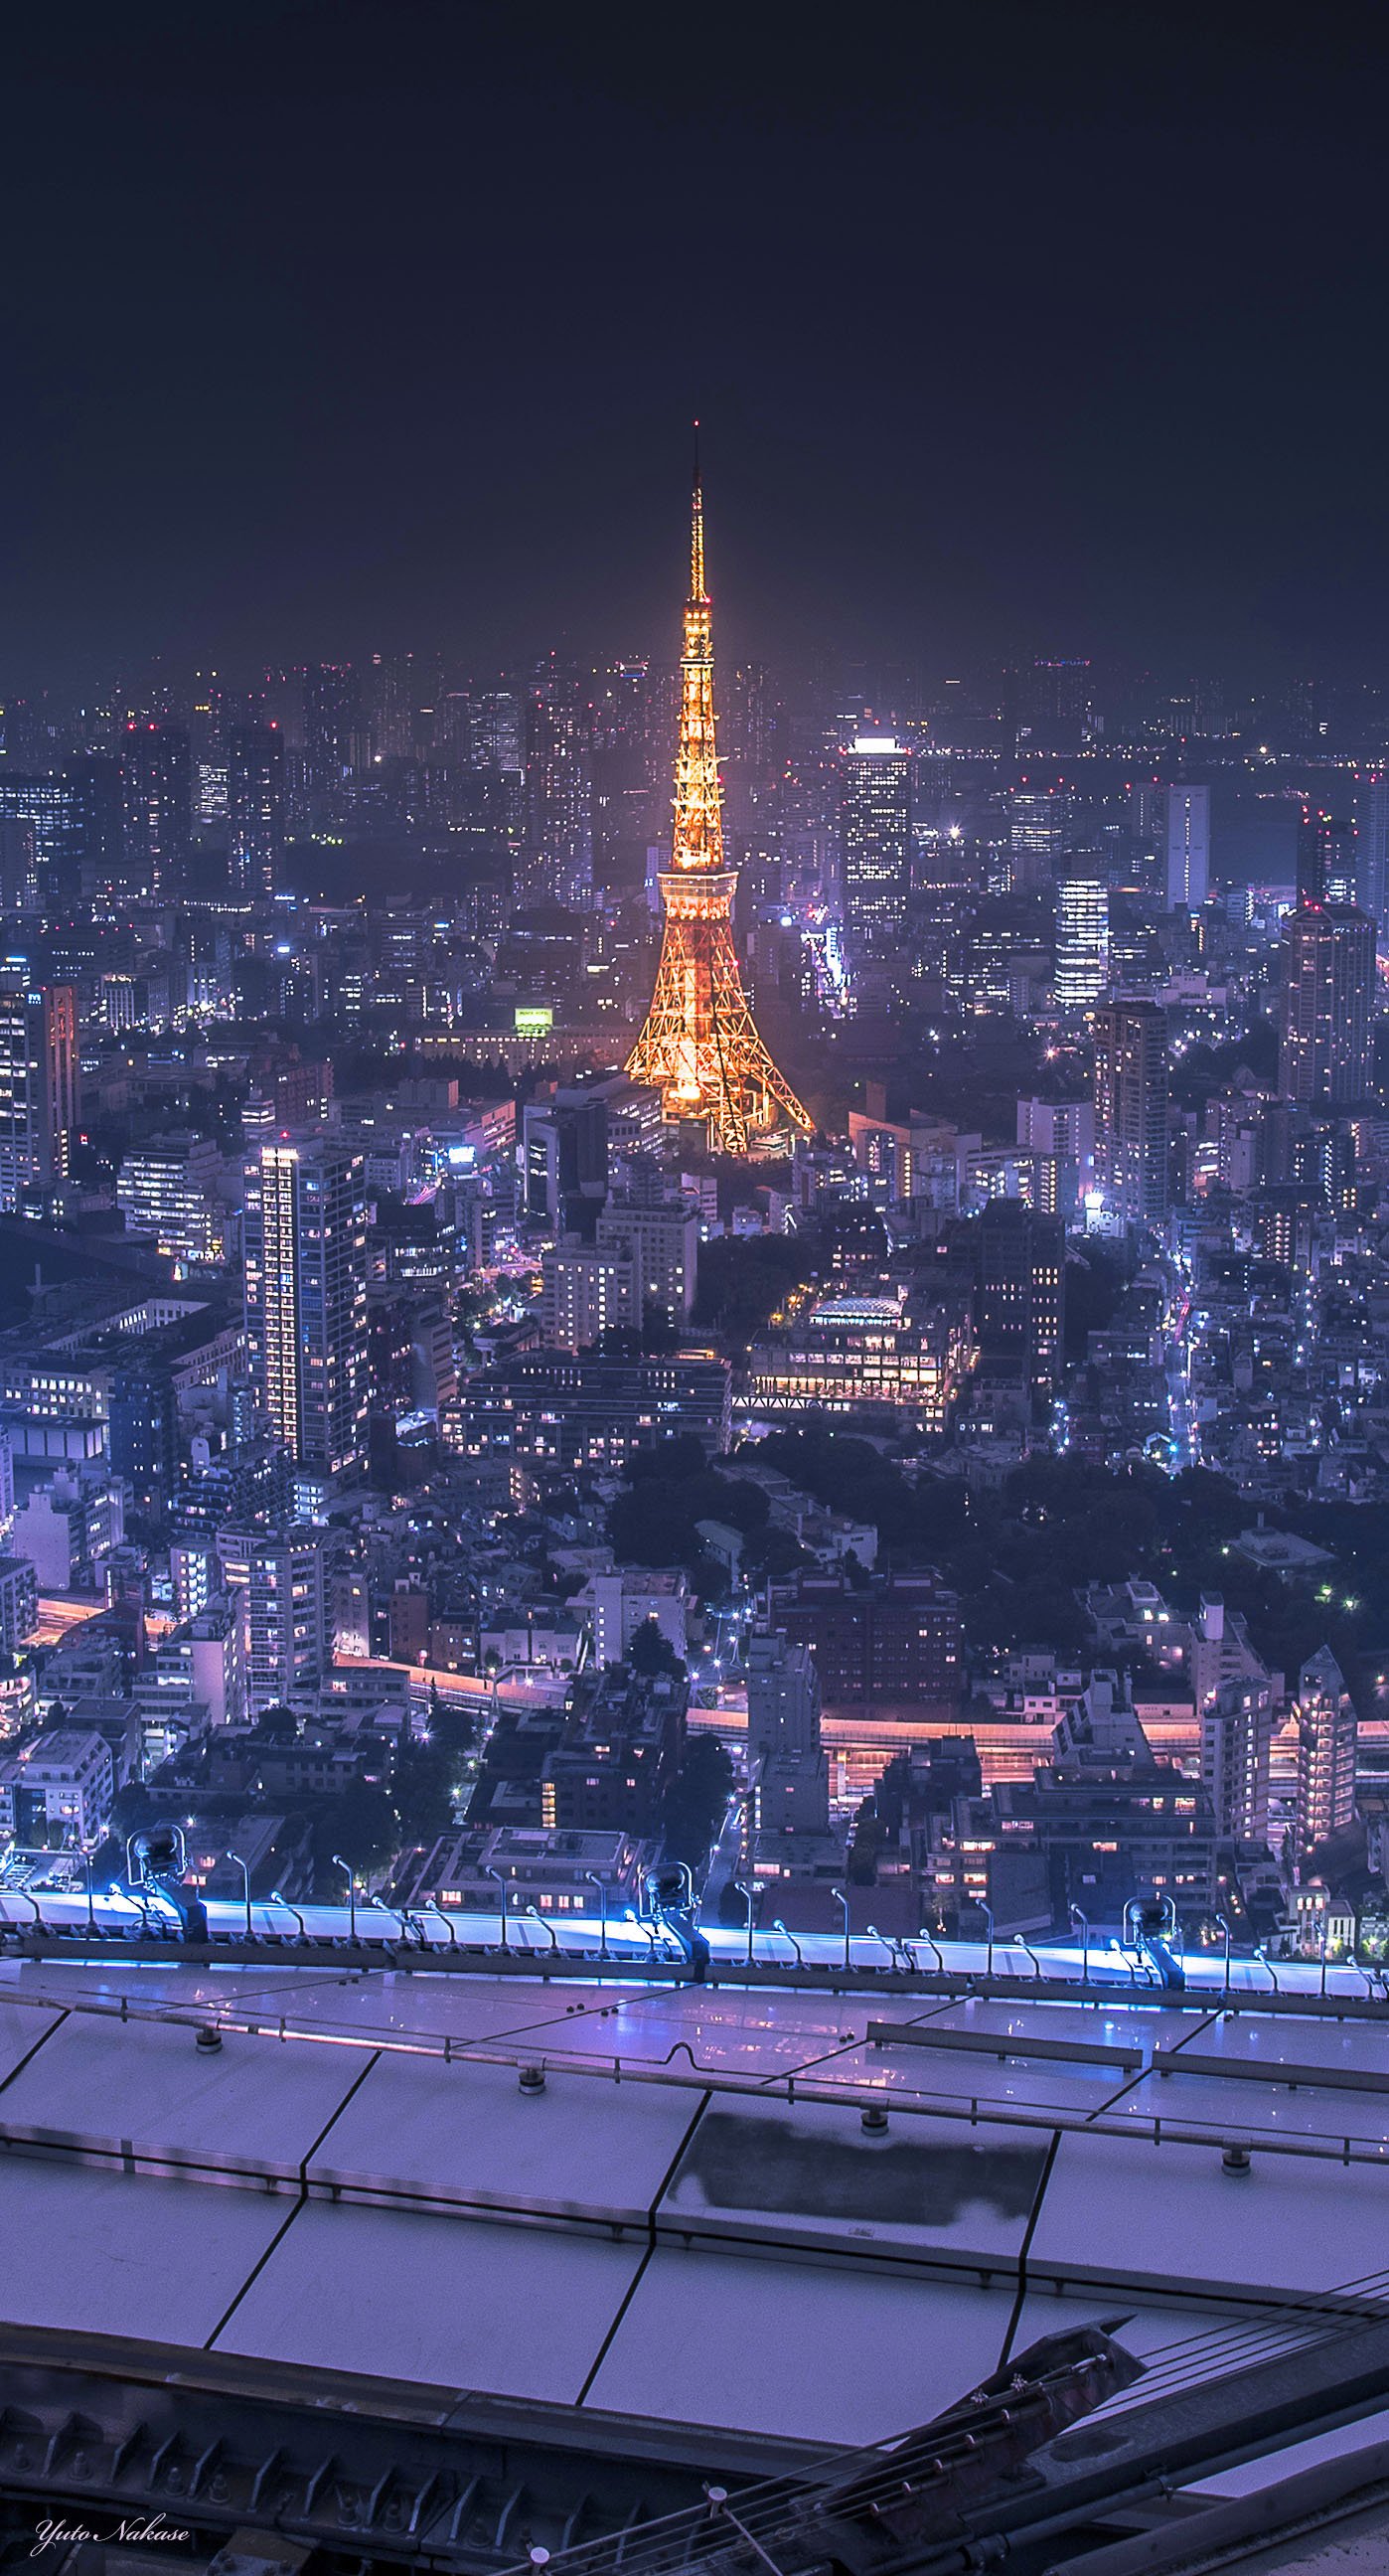 中瀬雄登 バズる 写真編集術 10月末出版 東京タワー大好きです 六本木ヒルズからと晴海ふ頭からの夜景です スマホの 壁紙として使用できるサイズです Iphone壁紙 ニッポンを撮る 東京タワー 六本木ヒルズ 晴海ふ頭 夜景 T Co